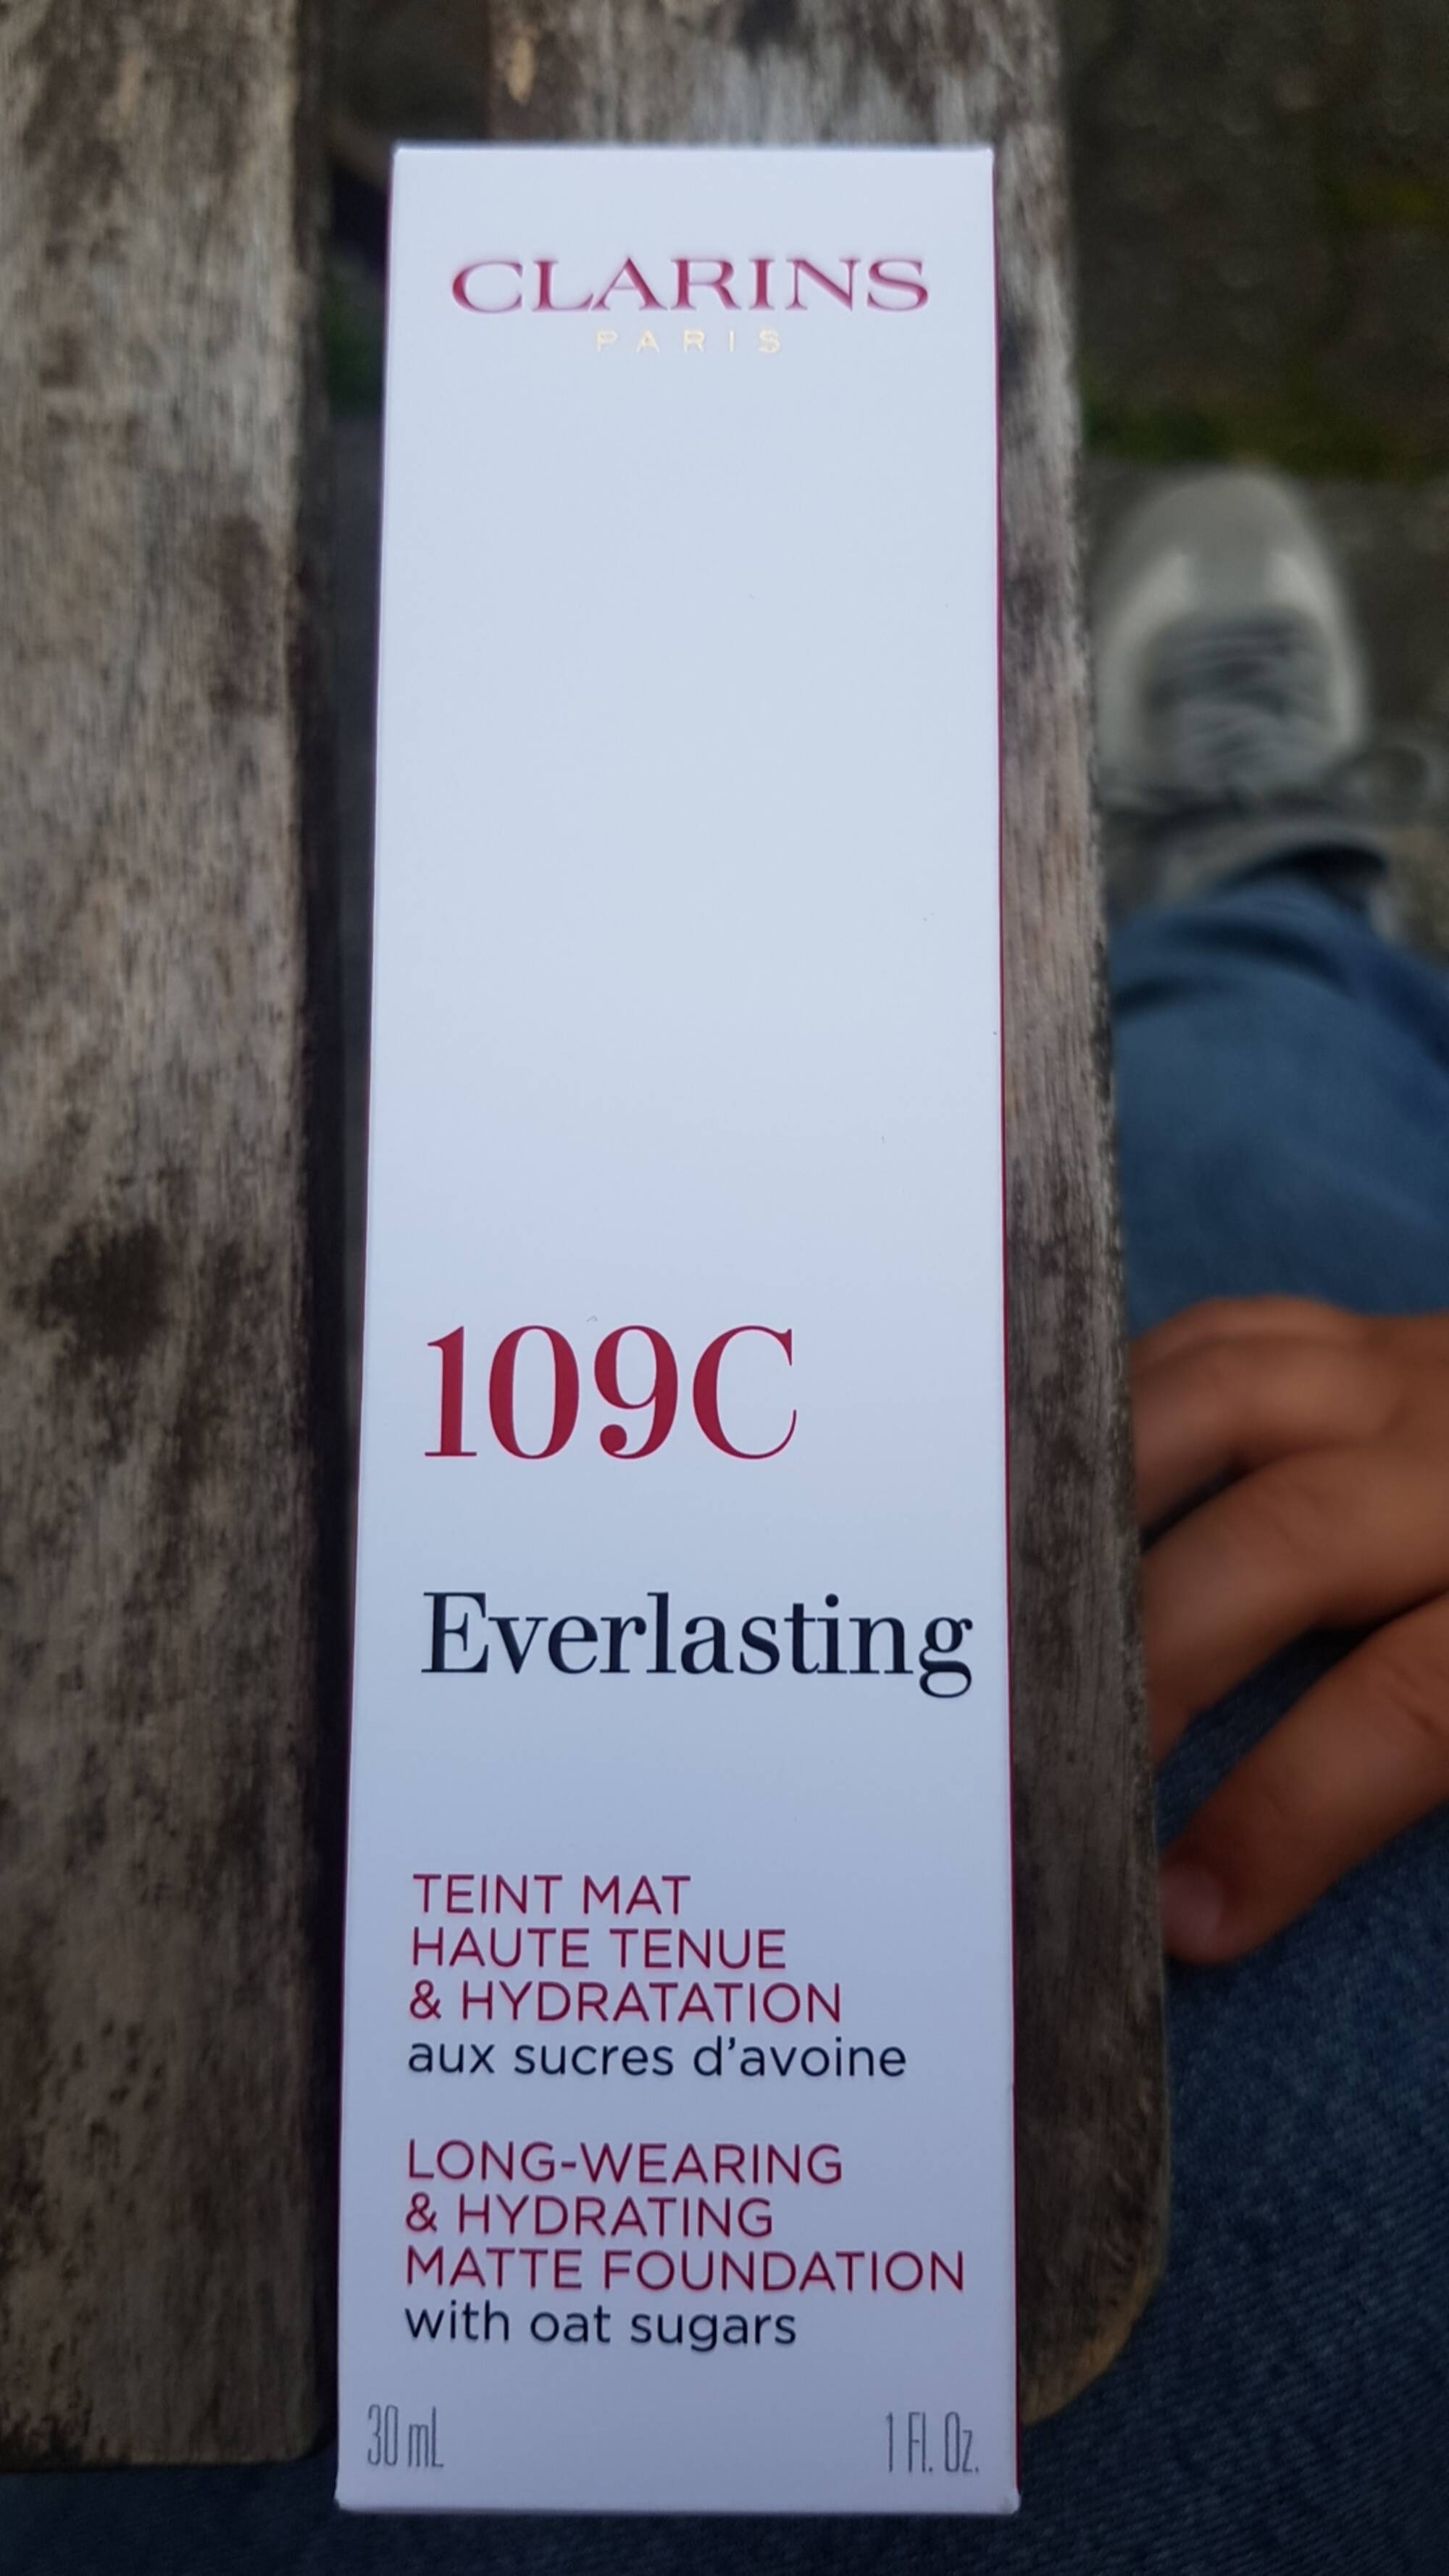 CLARINS - 109C Everlasting - Teint mat haute tenue & hydratation